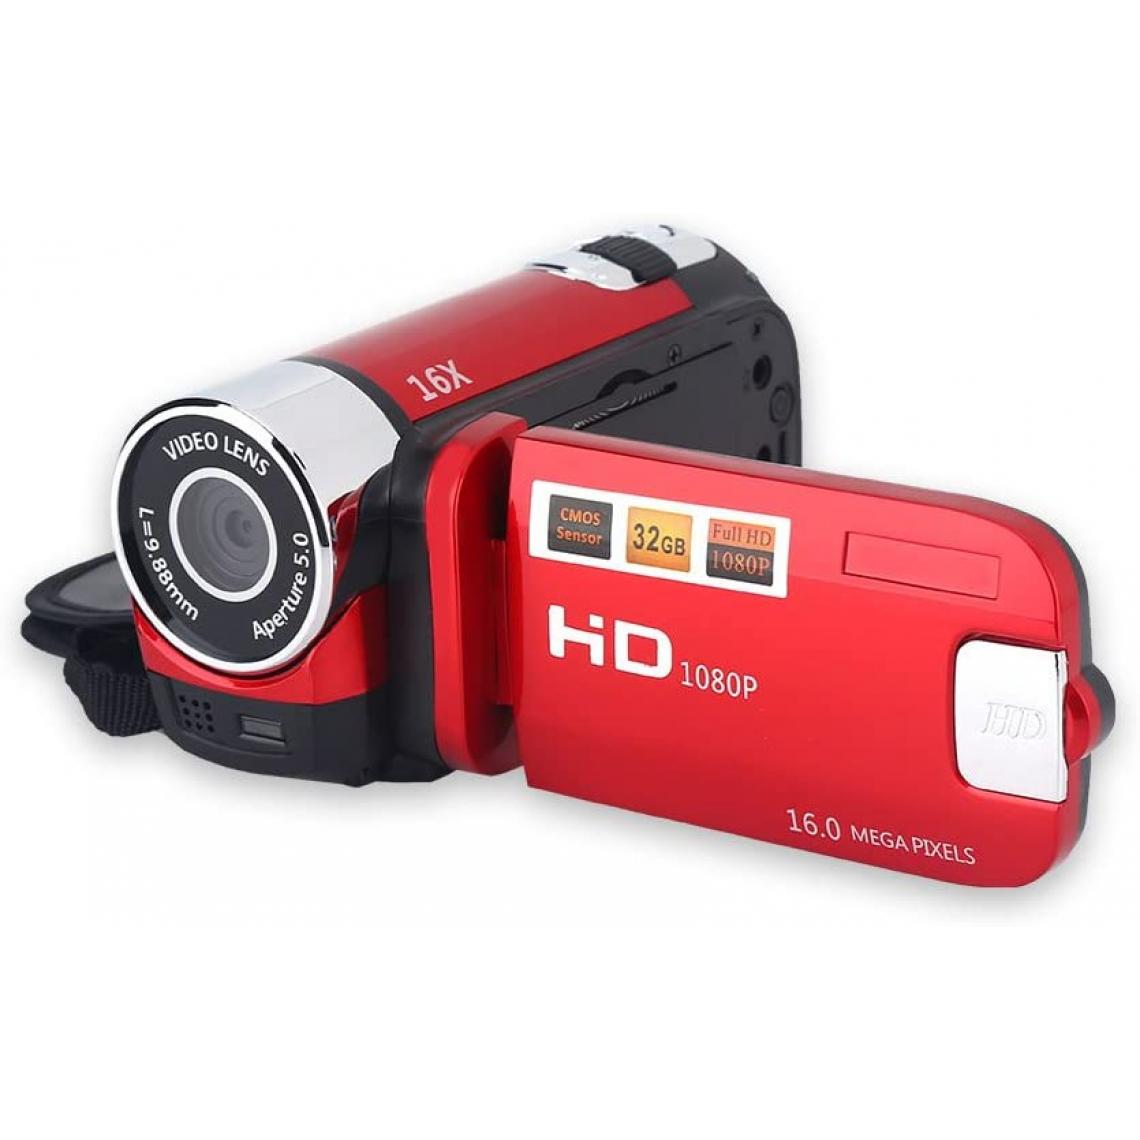 Vendos85 - Caméscope numérique Full HD de 2,7 pouces 1280 x 960 noir + 1 micro SD 16 go - Accessoires caméra